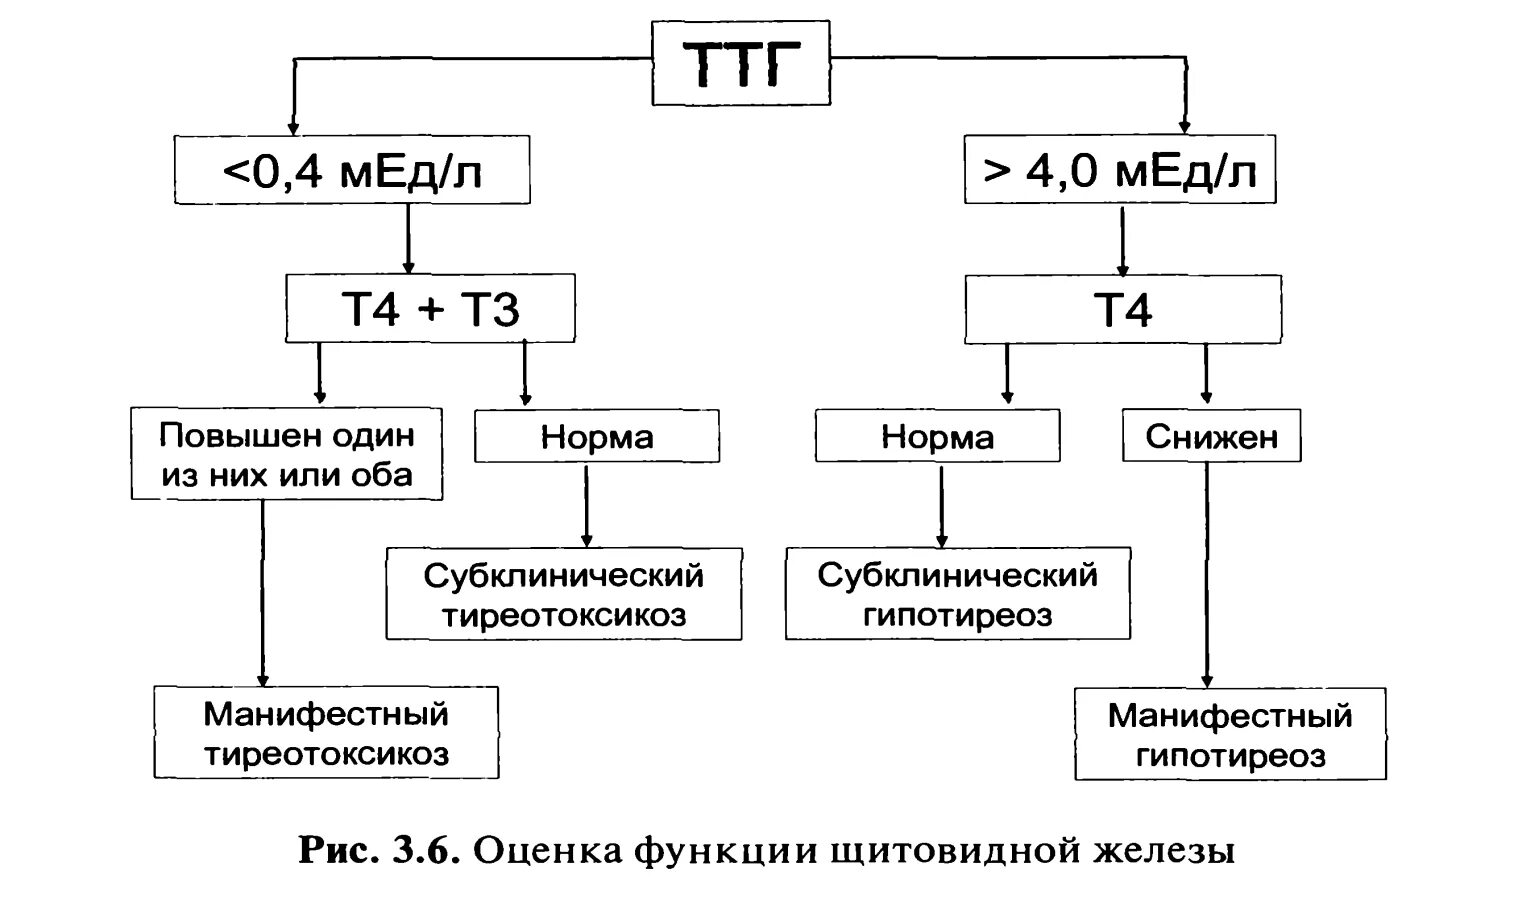 Повышенное ттг щитовидной. Гипотиреоз при нормальном ТТГ т3 т4. Низкий т4 при нормальном ТТГ И повышенном т3. Снижен т3 при нормальном ТТГ. Норма показателей ТТГ т3 т4.